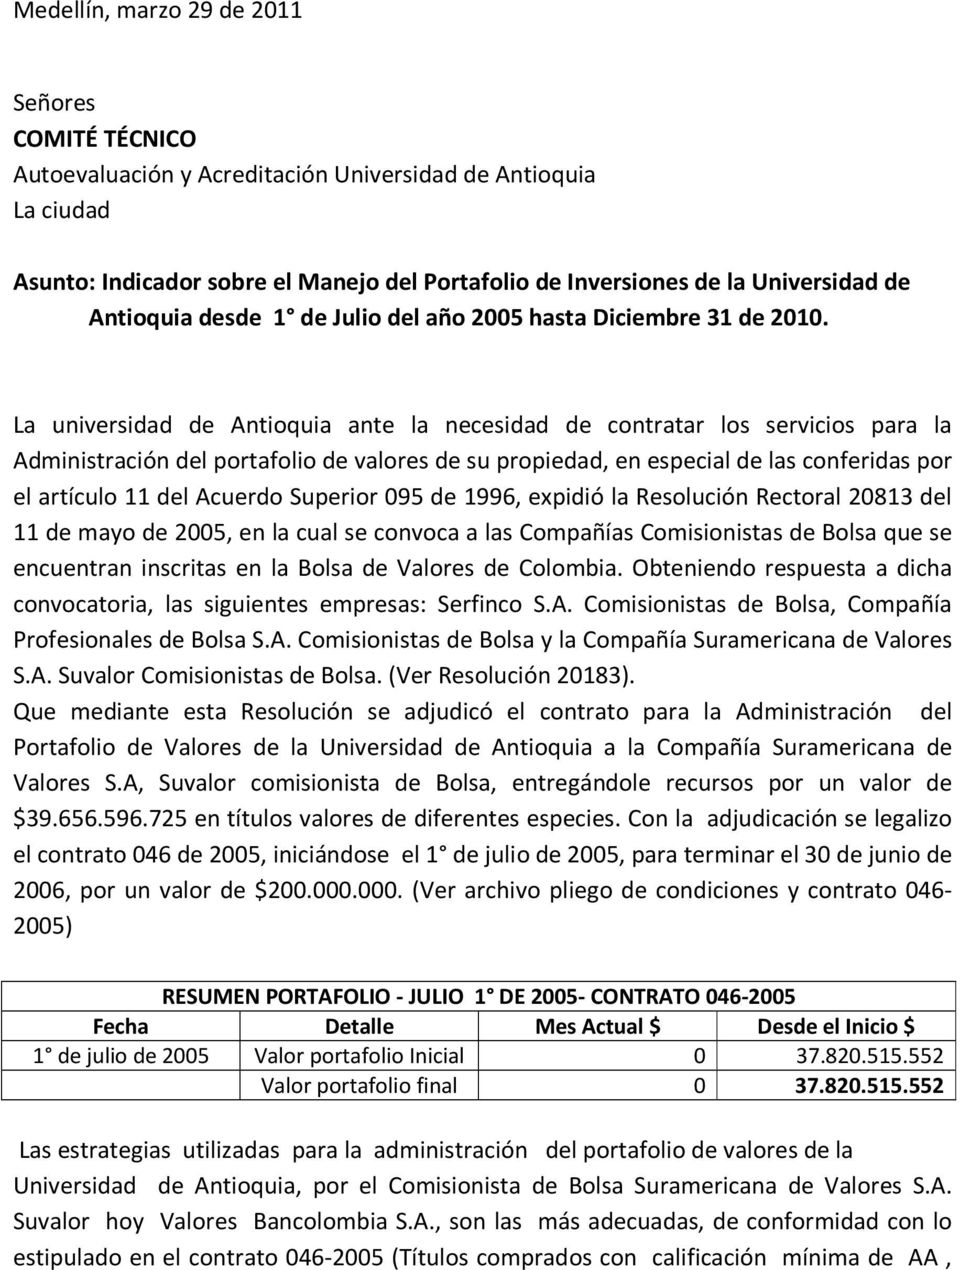 La universidad de Antioquia ante la necesidad de contratar los servicios para la Administración del portafolio de valores de su propiedad, en especial de las conferidas por el artículo 11 del Acuerdo